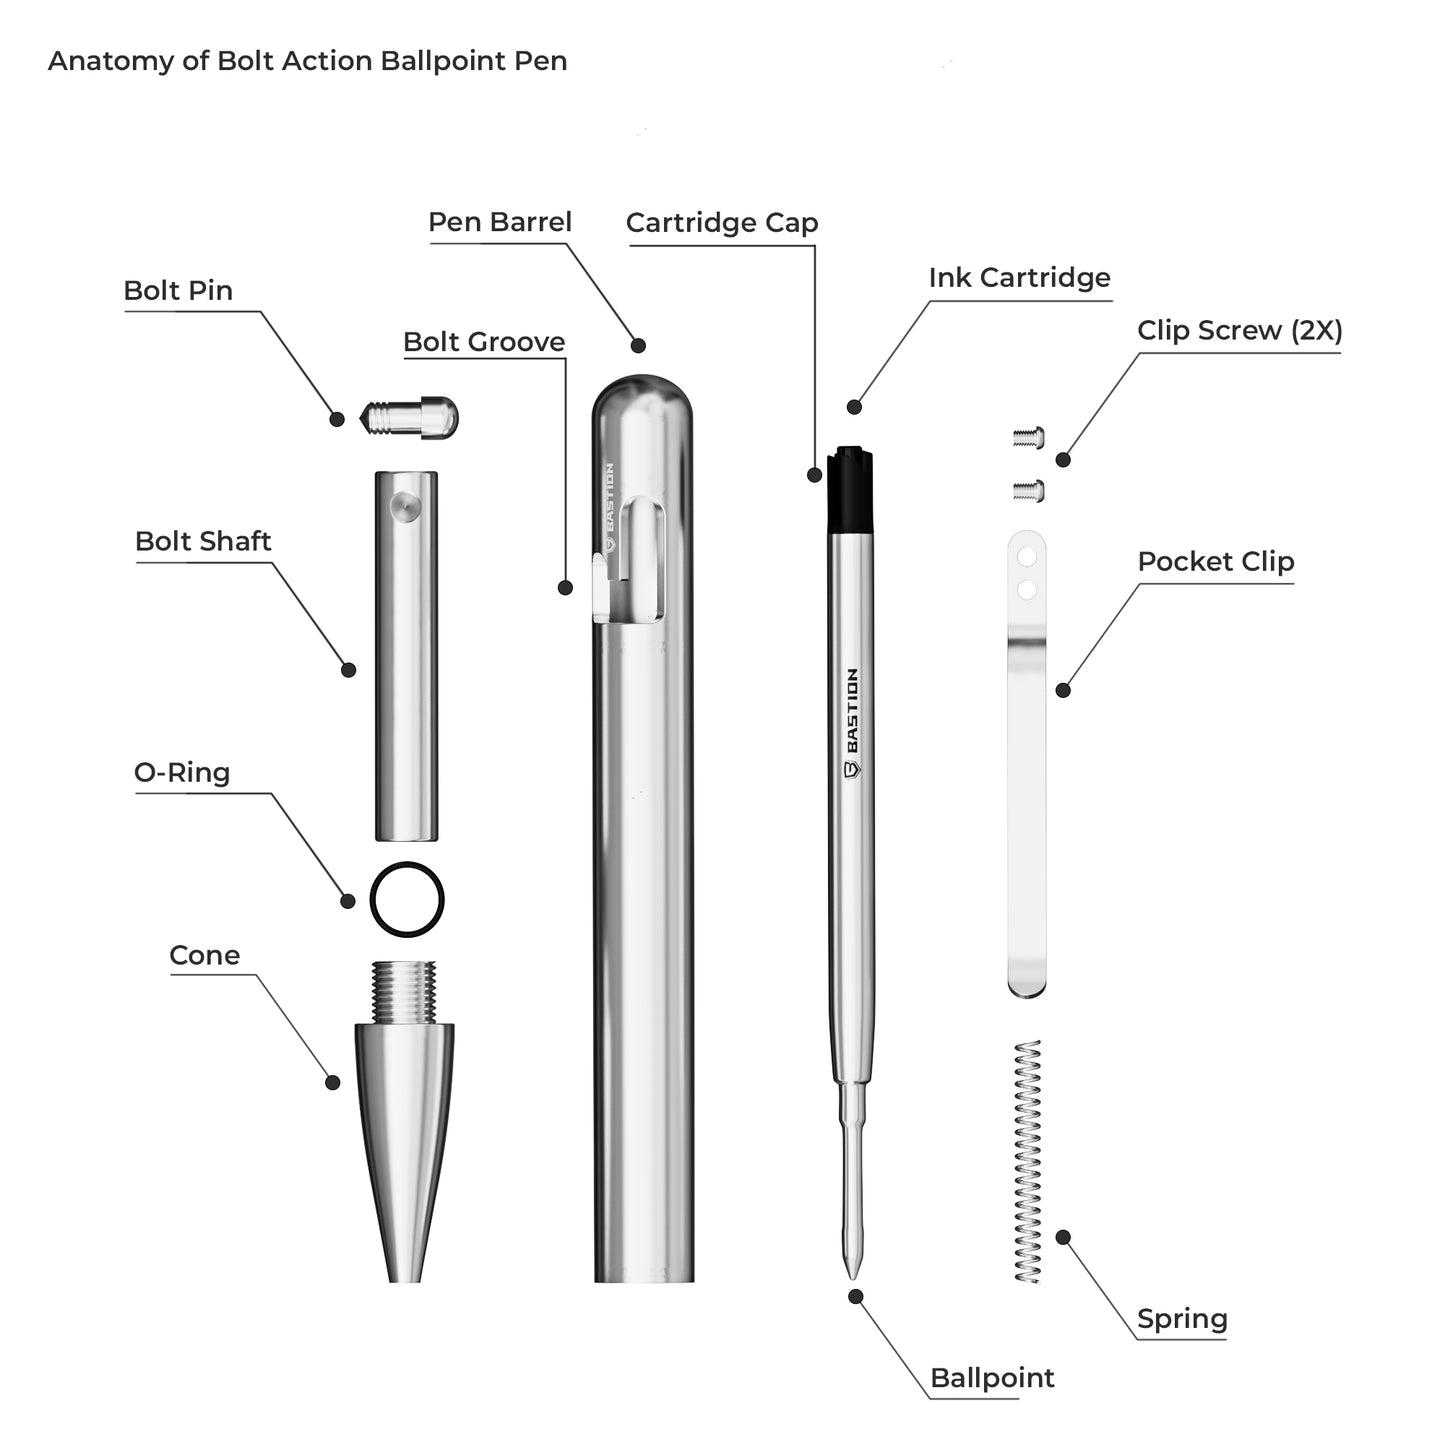 Aluminum - Bolt Action Pen by Bastion® - Bastion Bolt Action Pen